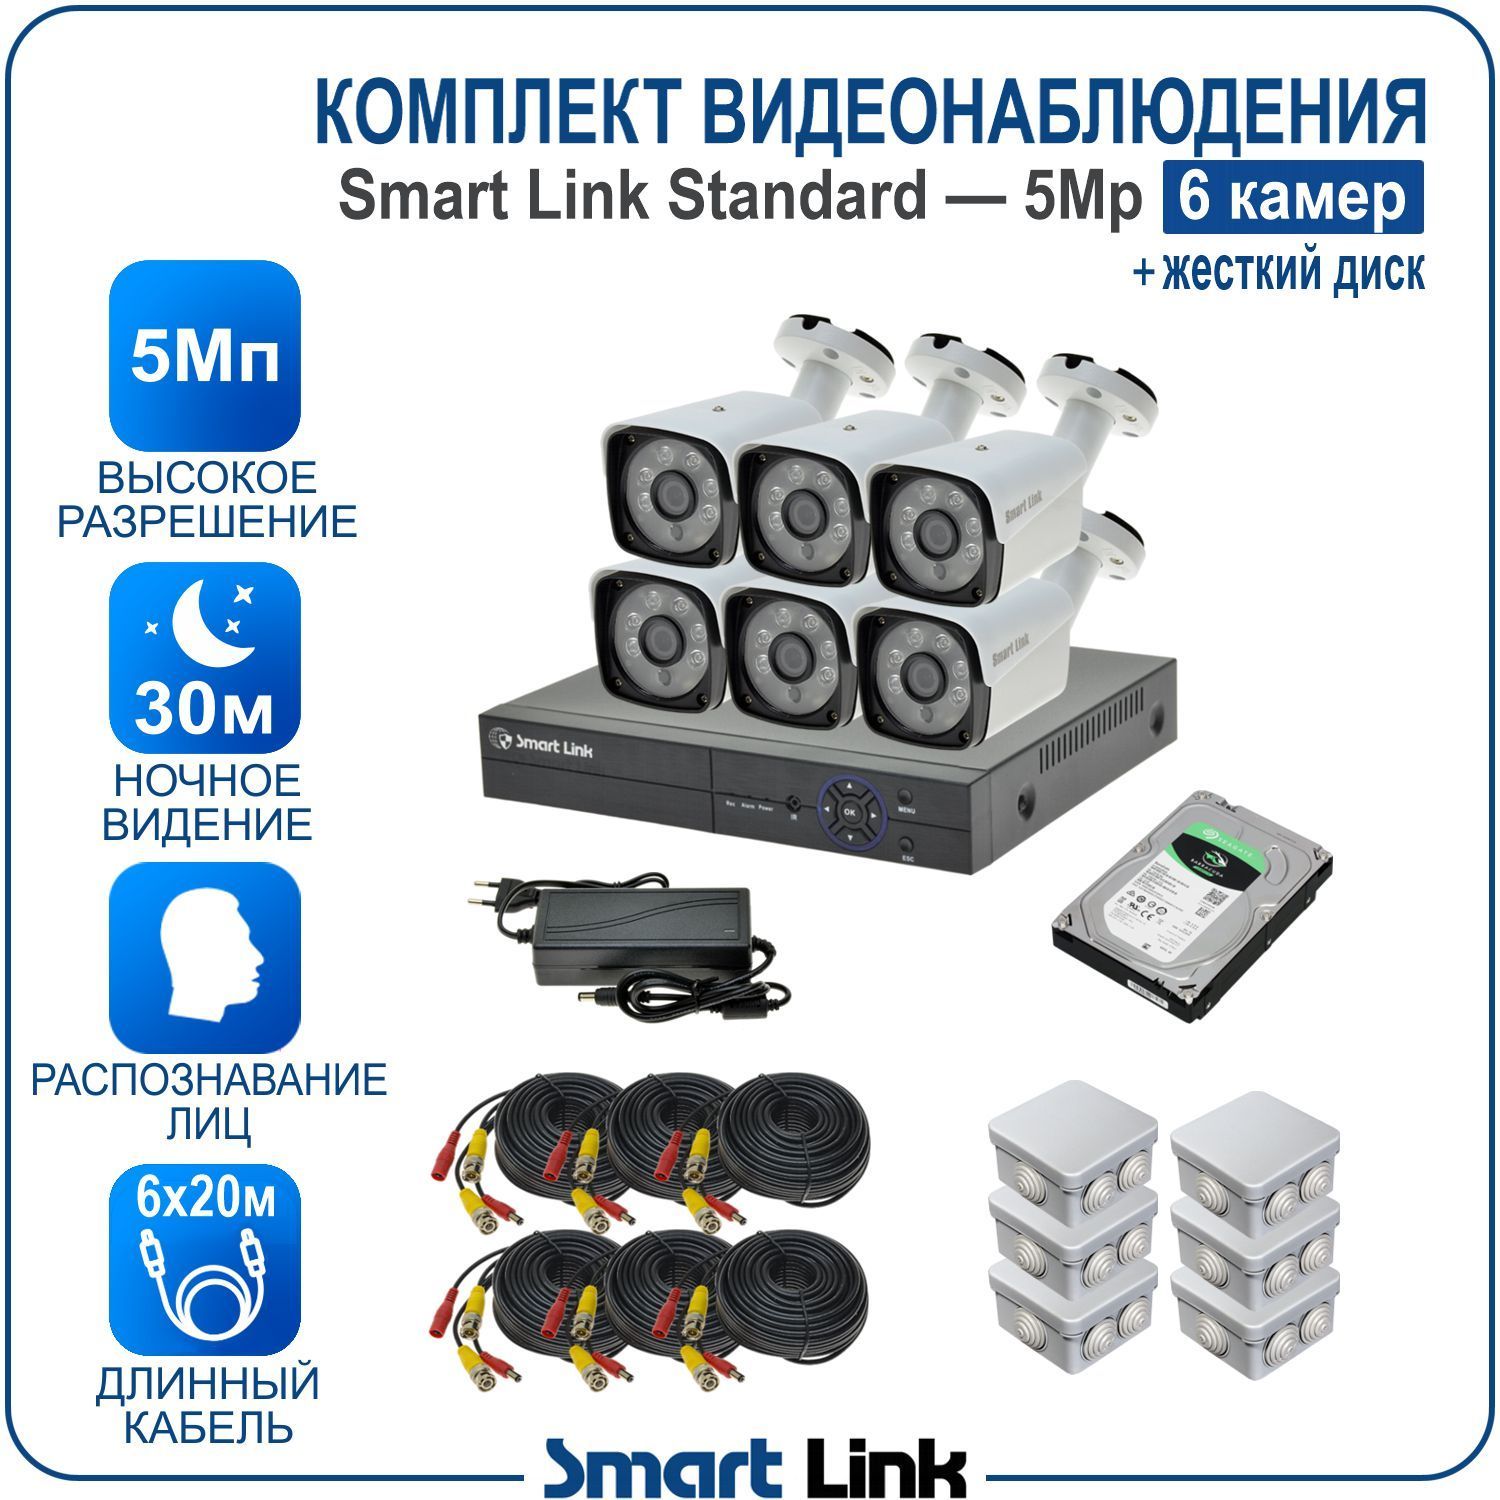 Комплект видеонаблюдения Smart Link SL-5M5N6B-H на 6 уличных 5Мп камер + жесткий диск комплект видеонаблюдения smart link sl 5m5n6b h на 6 уличных 5мп камер жесткий диск